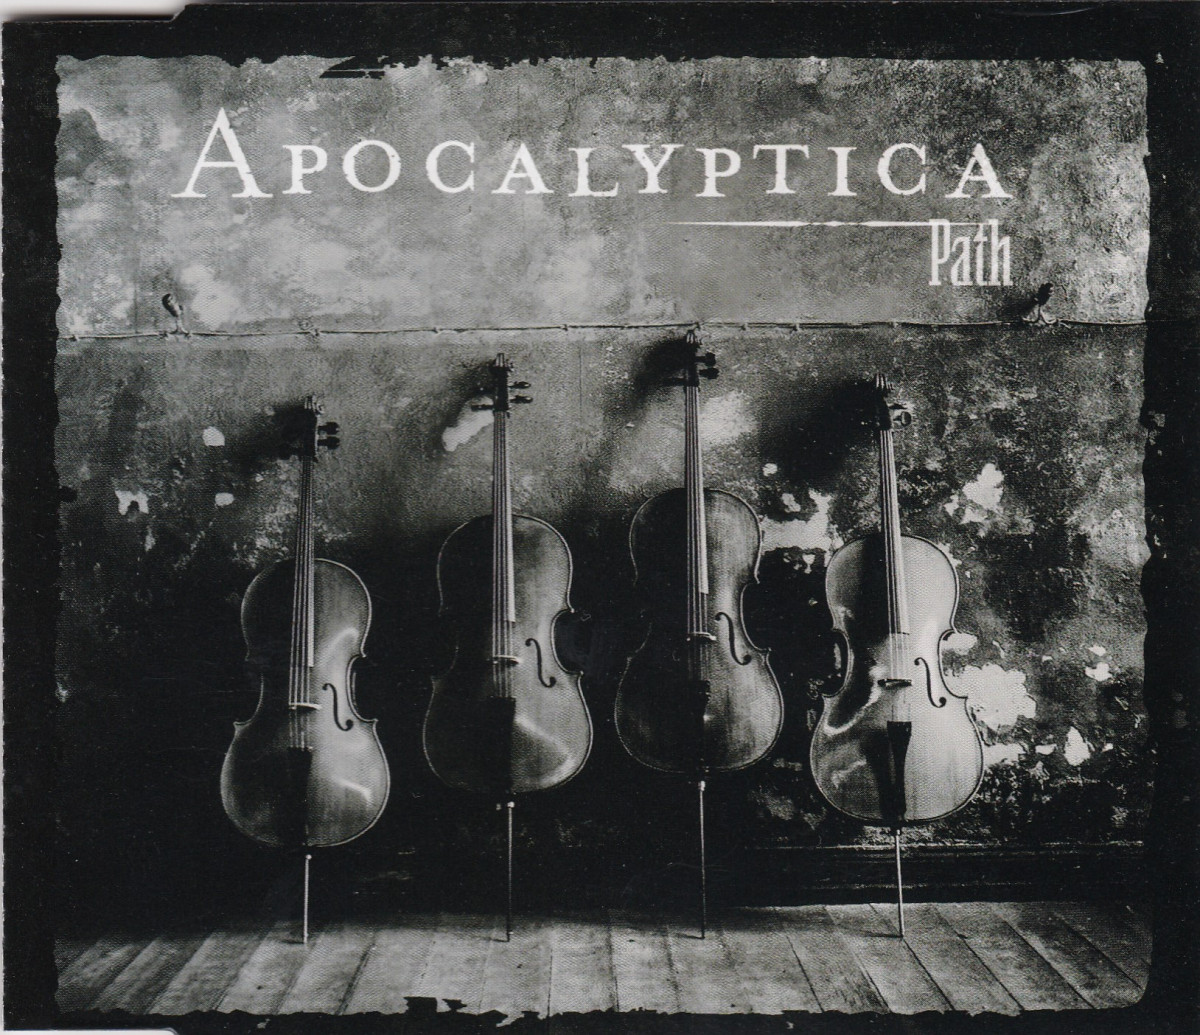 Audio paths. Apocalyptica 2000. Apocalyptica Cult 2000. Апокалиптика Path. Apocalyptica обложки.